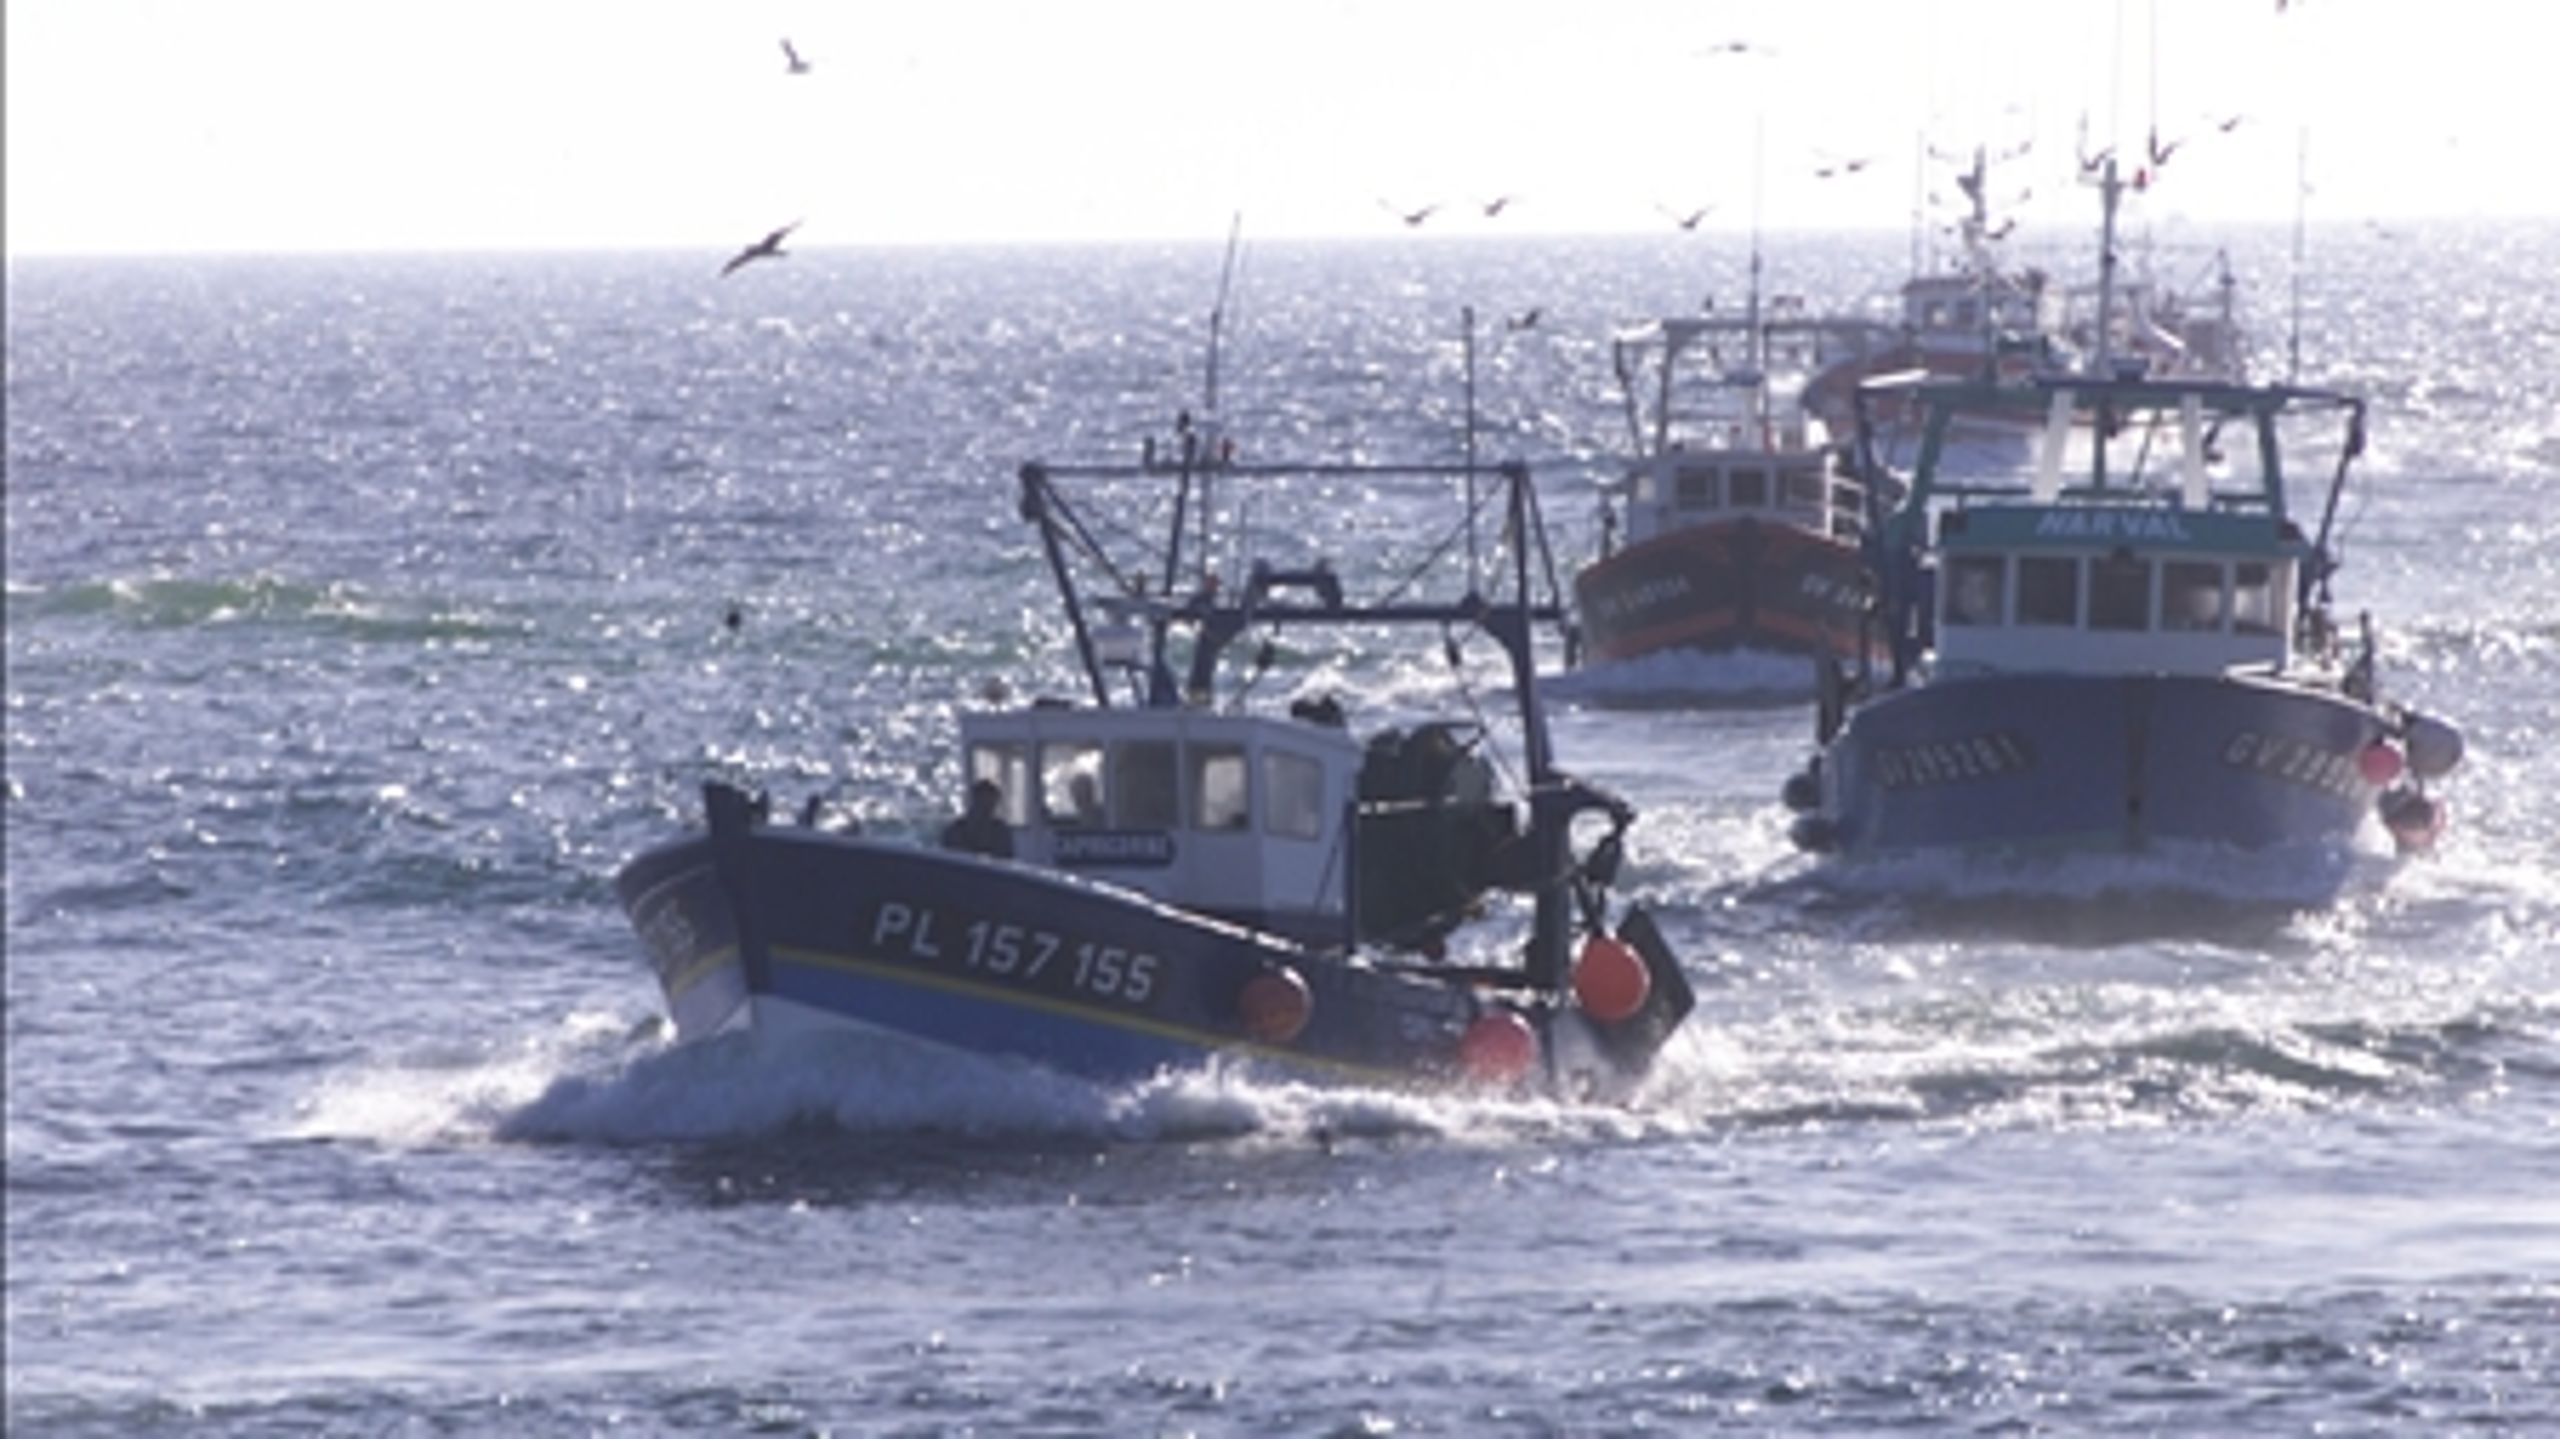 EU's fiskeripolitik skal reformeres inden udgangen af 2012. Greenpeace efterlyser en mere ambitiøs linje fra fødevareminister Henrik Høegh (V), som afviser kritikken.